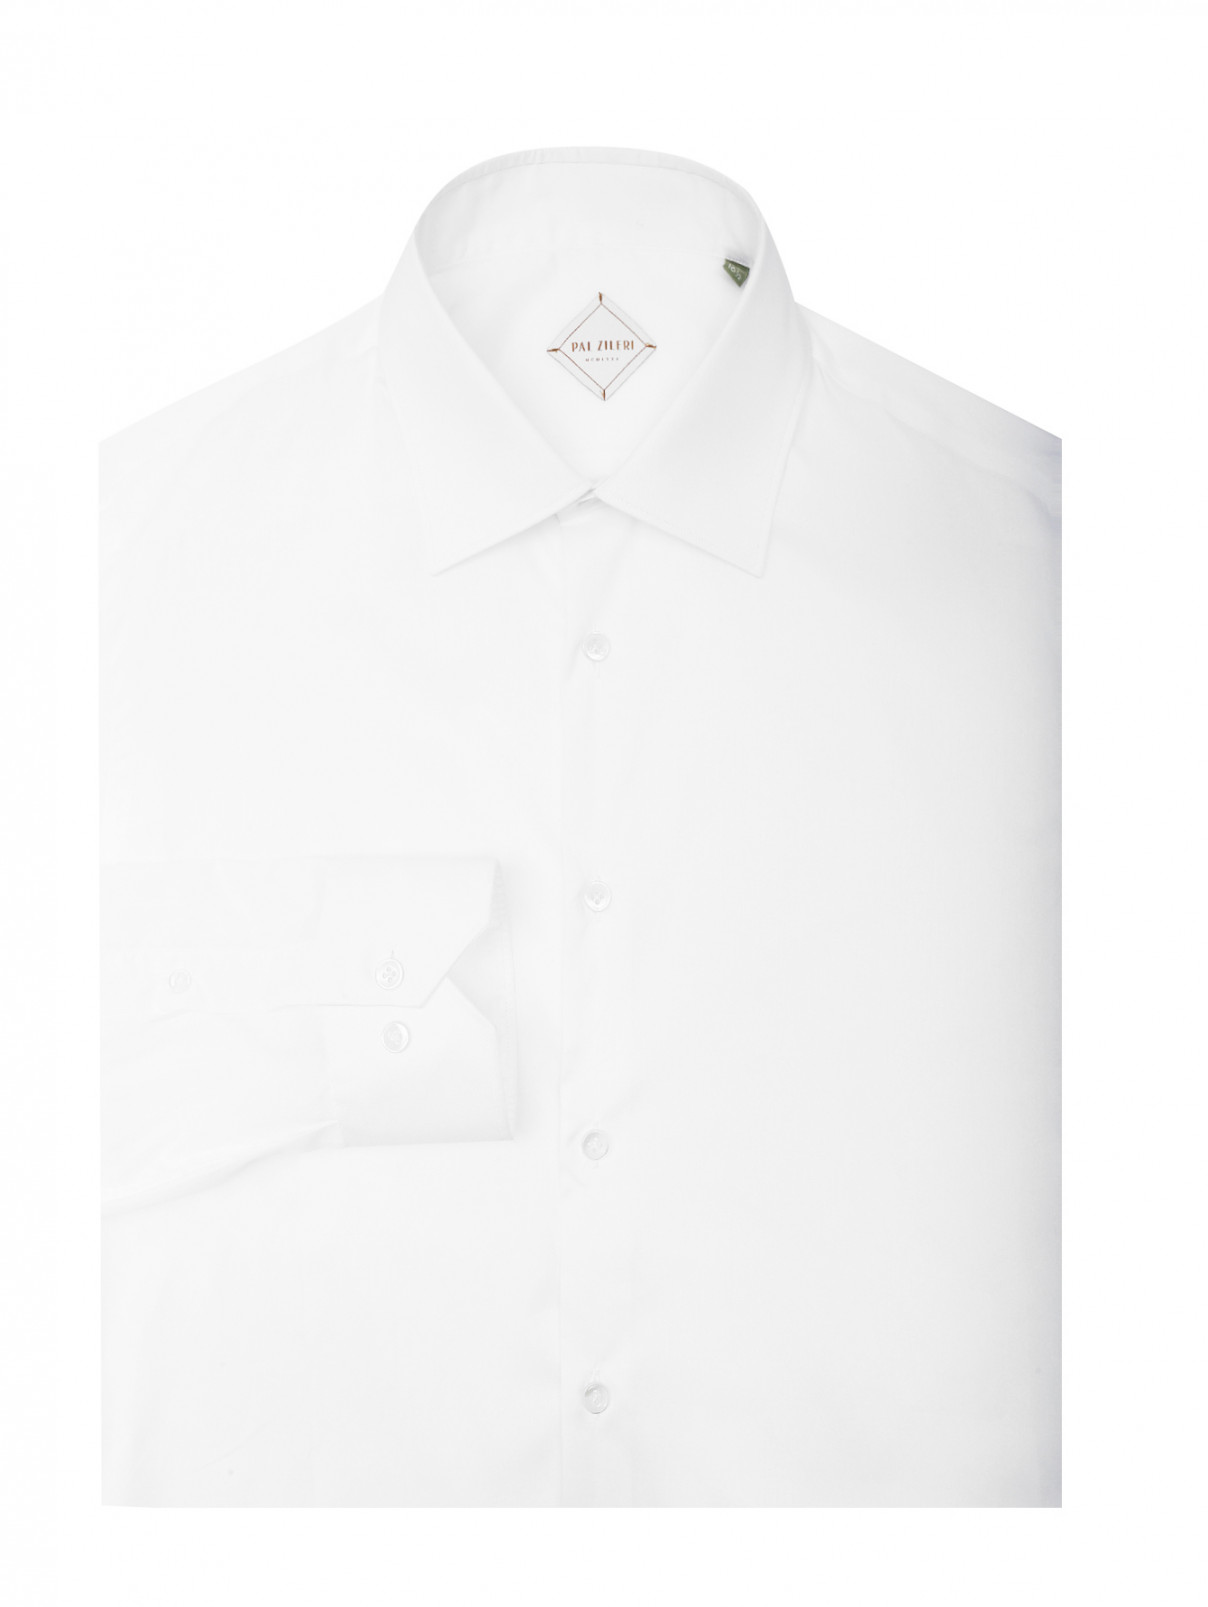 Рубашка хлопковая, полуприталенная Pal Zileri  –  Общий вид  – Цвет:  Белый